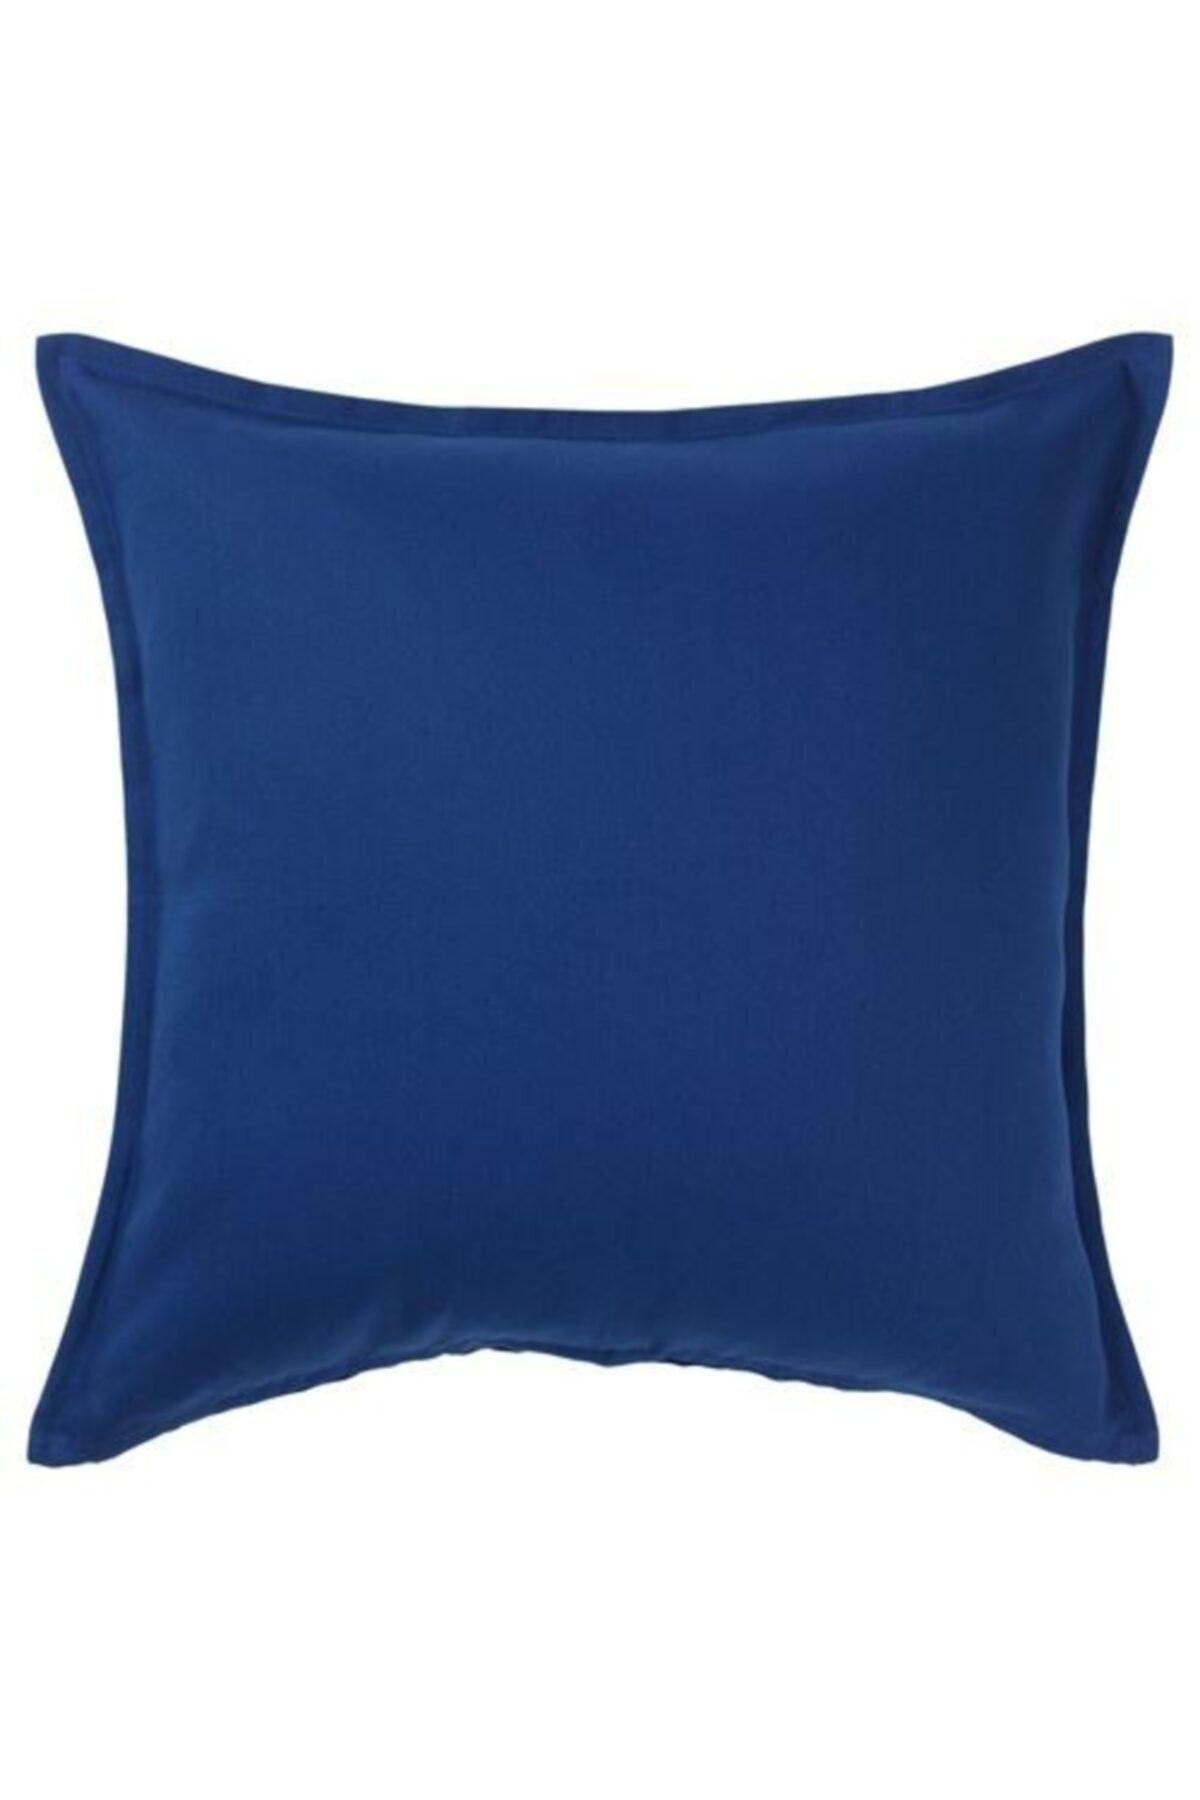 IKEA Minder Kırlent Kılıfı Meridyendukkan 50x50 Cm Koyu Mavi Rengi Fermuarlı Yastık Kılıfı